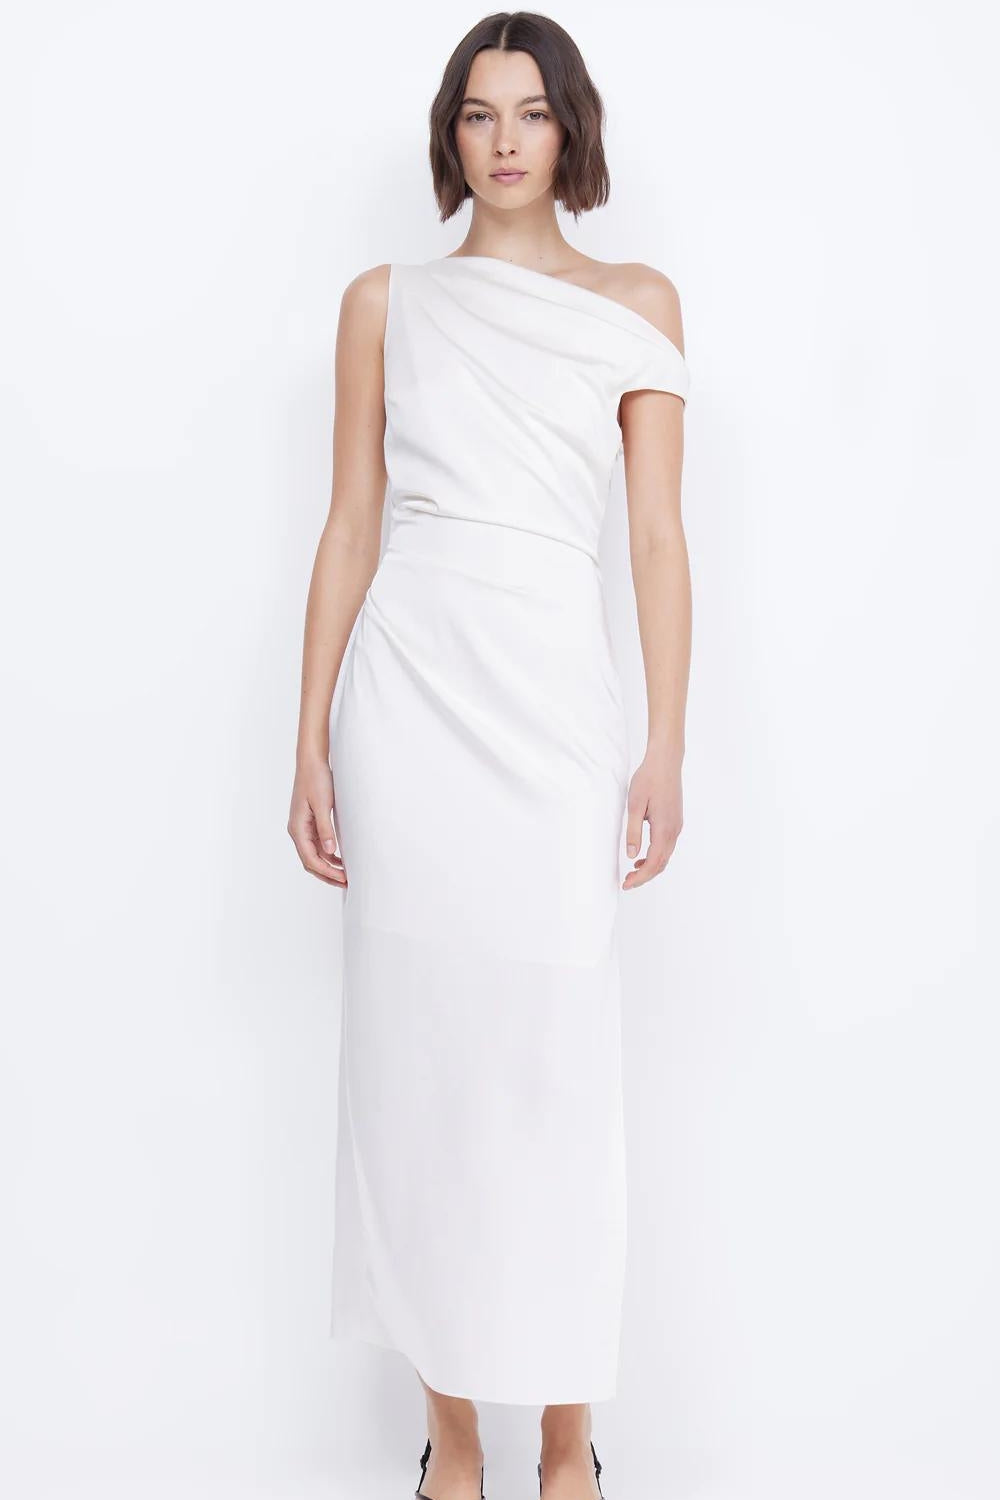 Velveteen White Dress